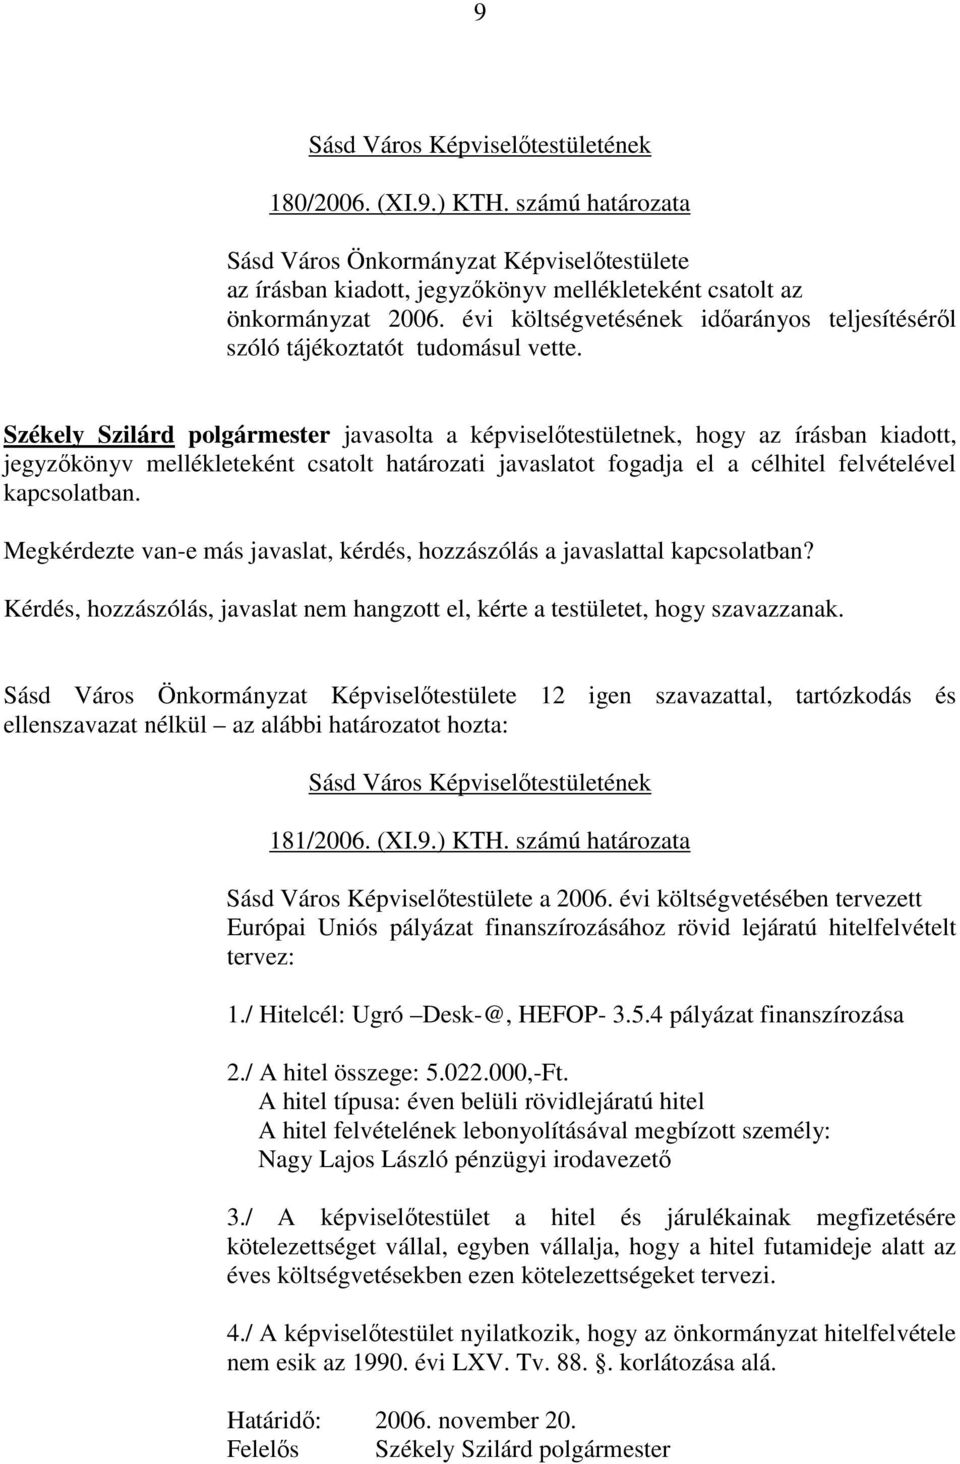 Székely Szilárd polgármester javasolta a képviselıtestületnek, hogy az írásban kiadott, jegyzıkönyv mellékleteként csatolt határozati javaslatot fogadja el a célhitel felvételével kapcsolatban.